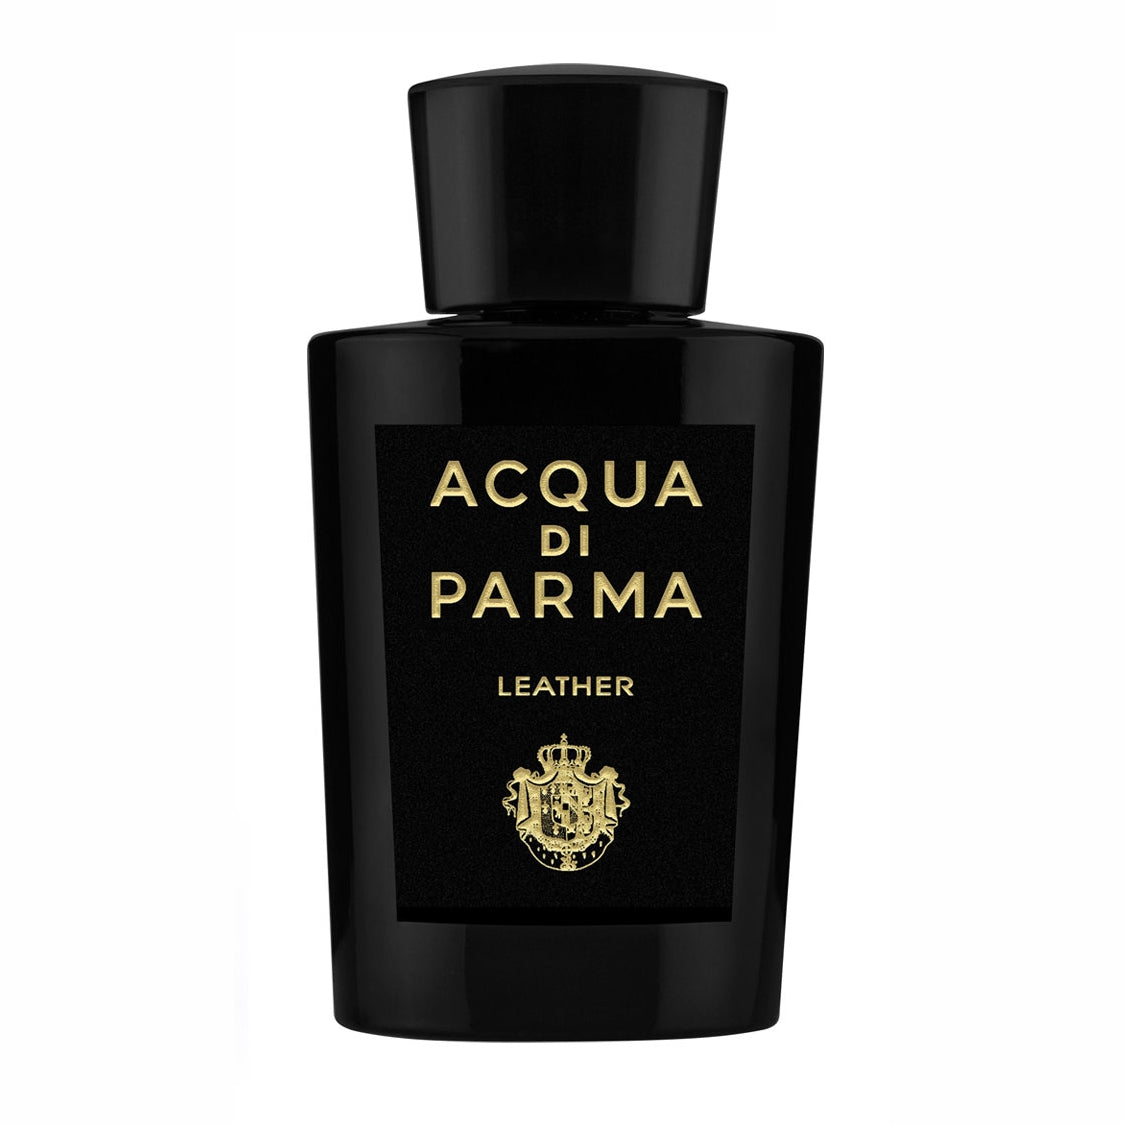 Acqua Di Parma Leather Concentree Special Edition - Perfume Decant